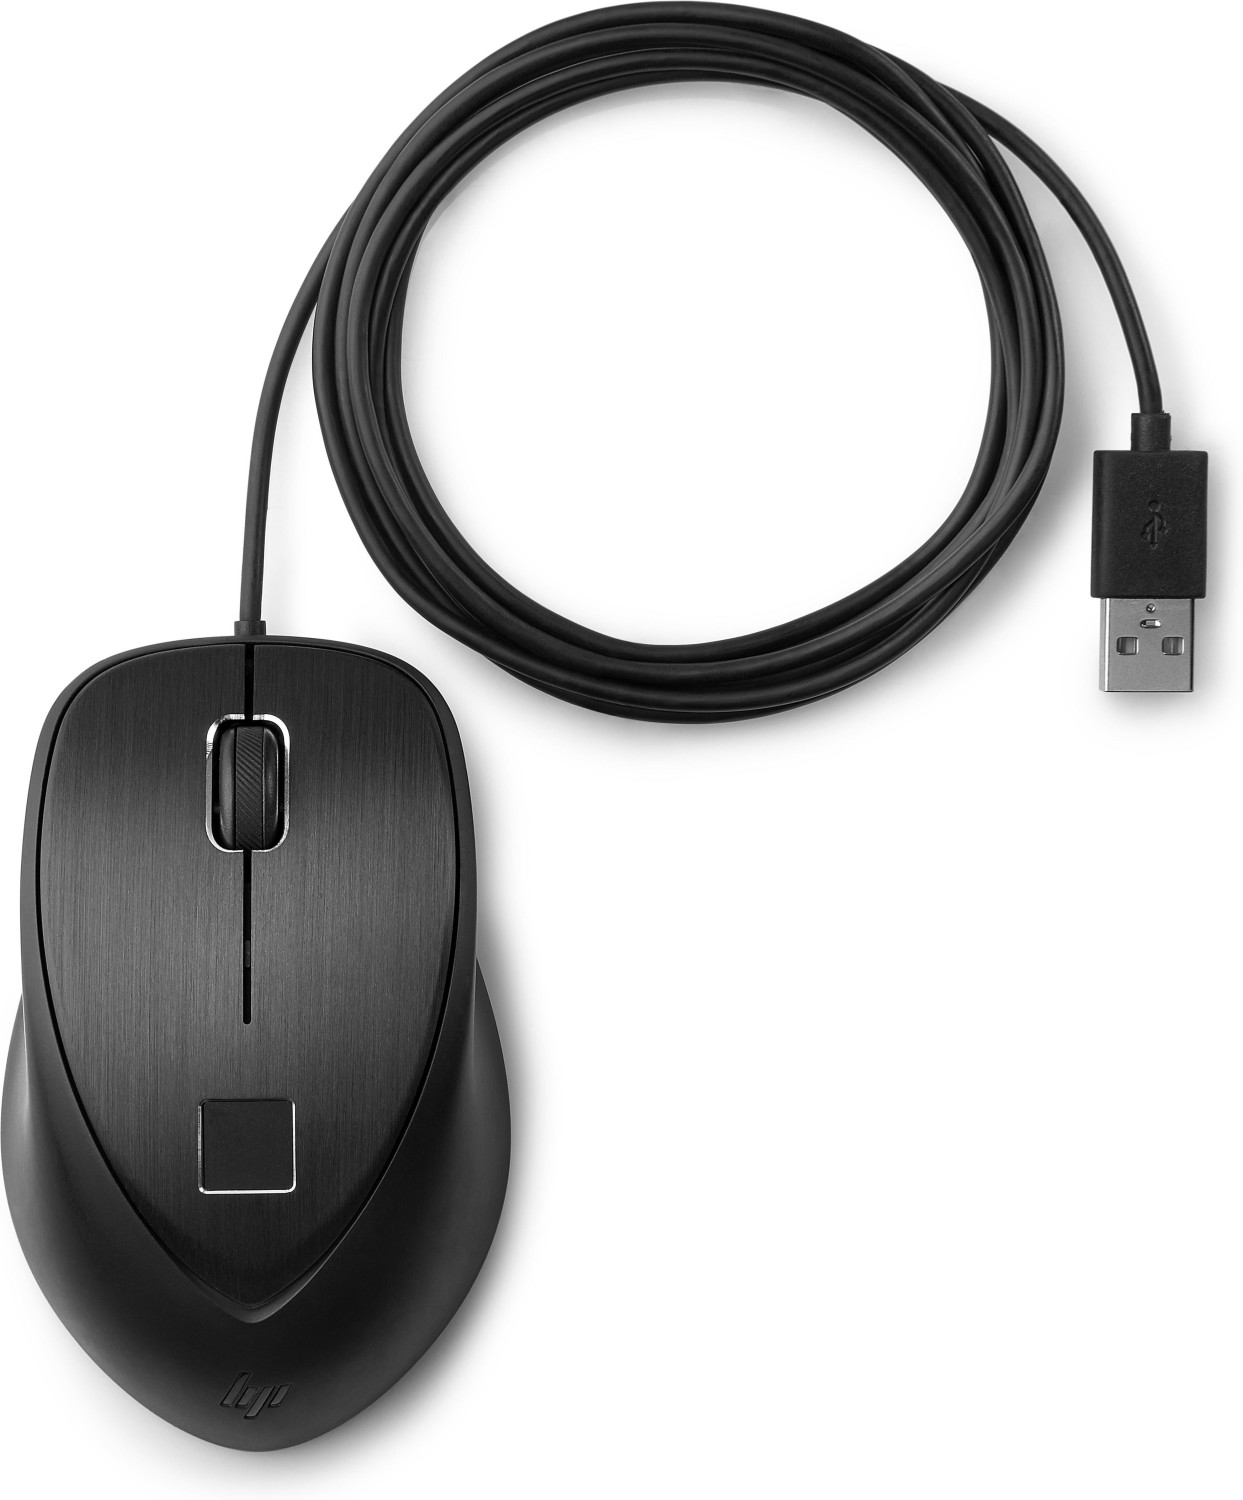 HP Mouse USB con lettore di impronta digitale a € 37,99 (oggi)